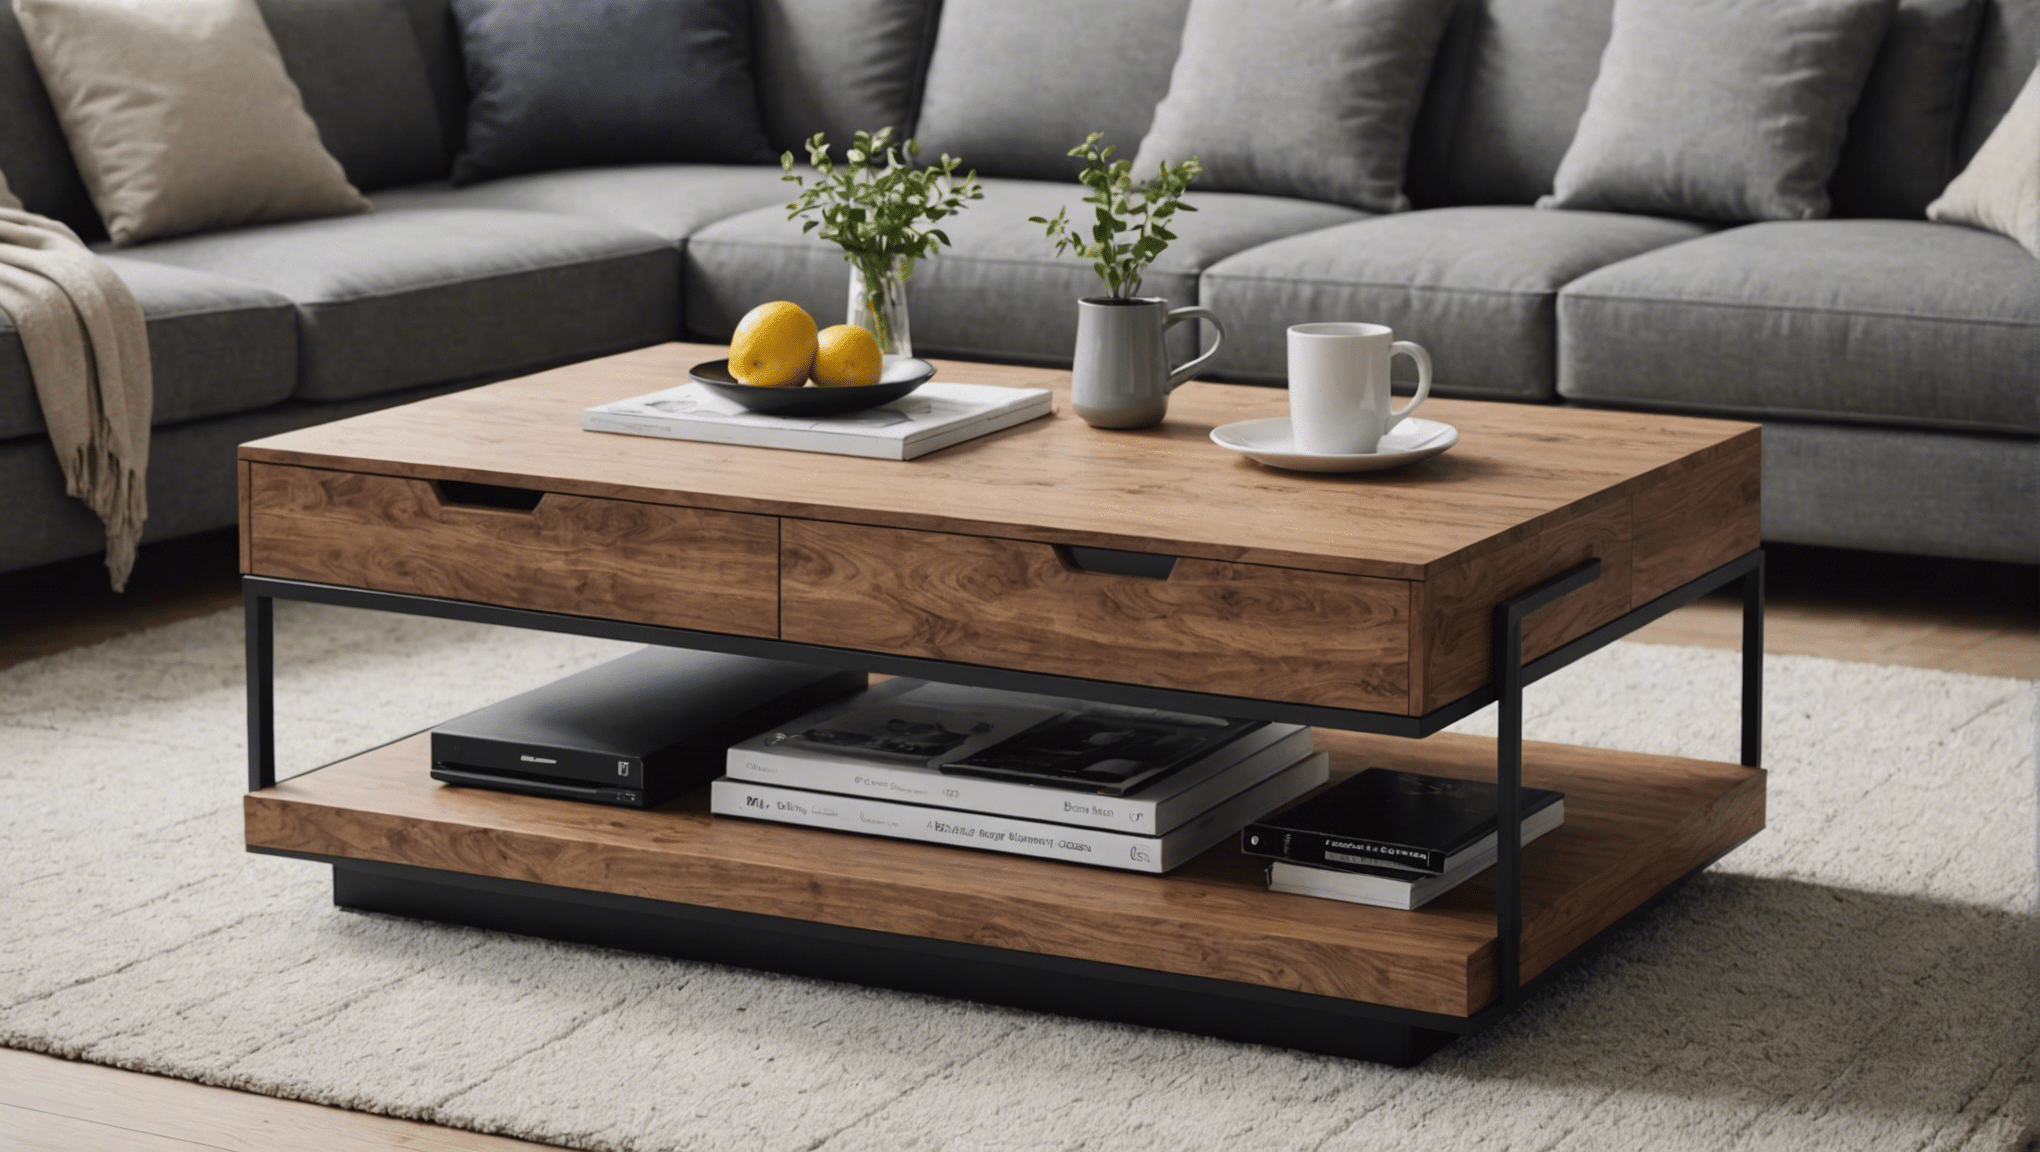 découvrez ce qui rend la table basse design made in design si spéciale : son design unique, ses matériaux de qualité et sa conception experte. une pièce incontournable pour sublimer votre intérieur.